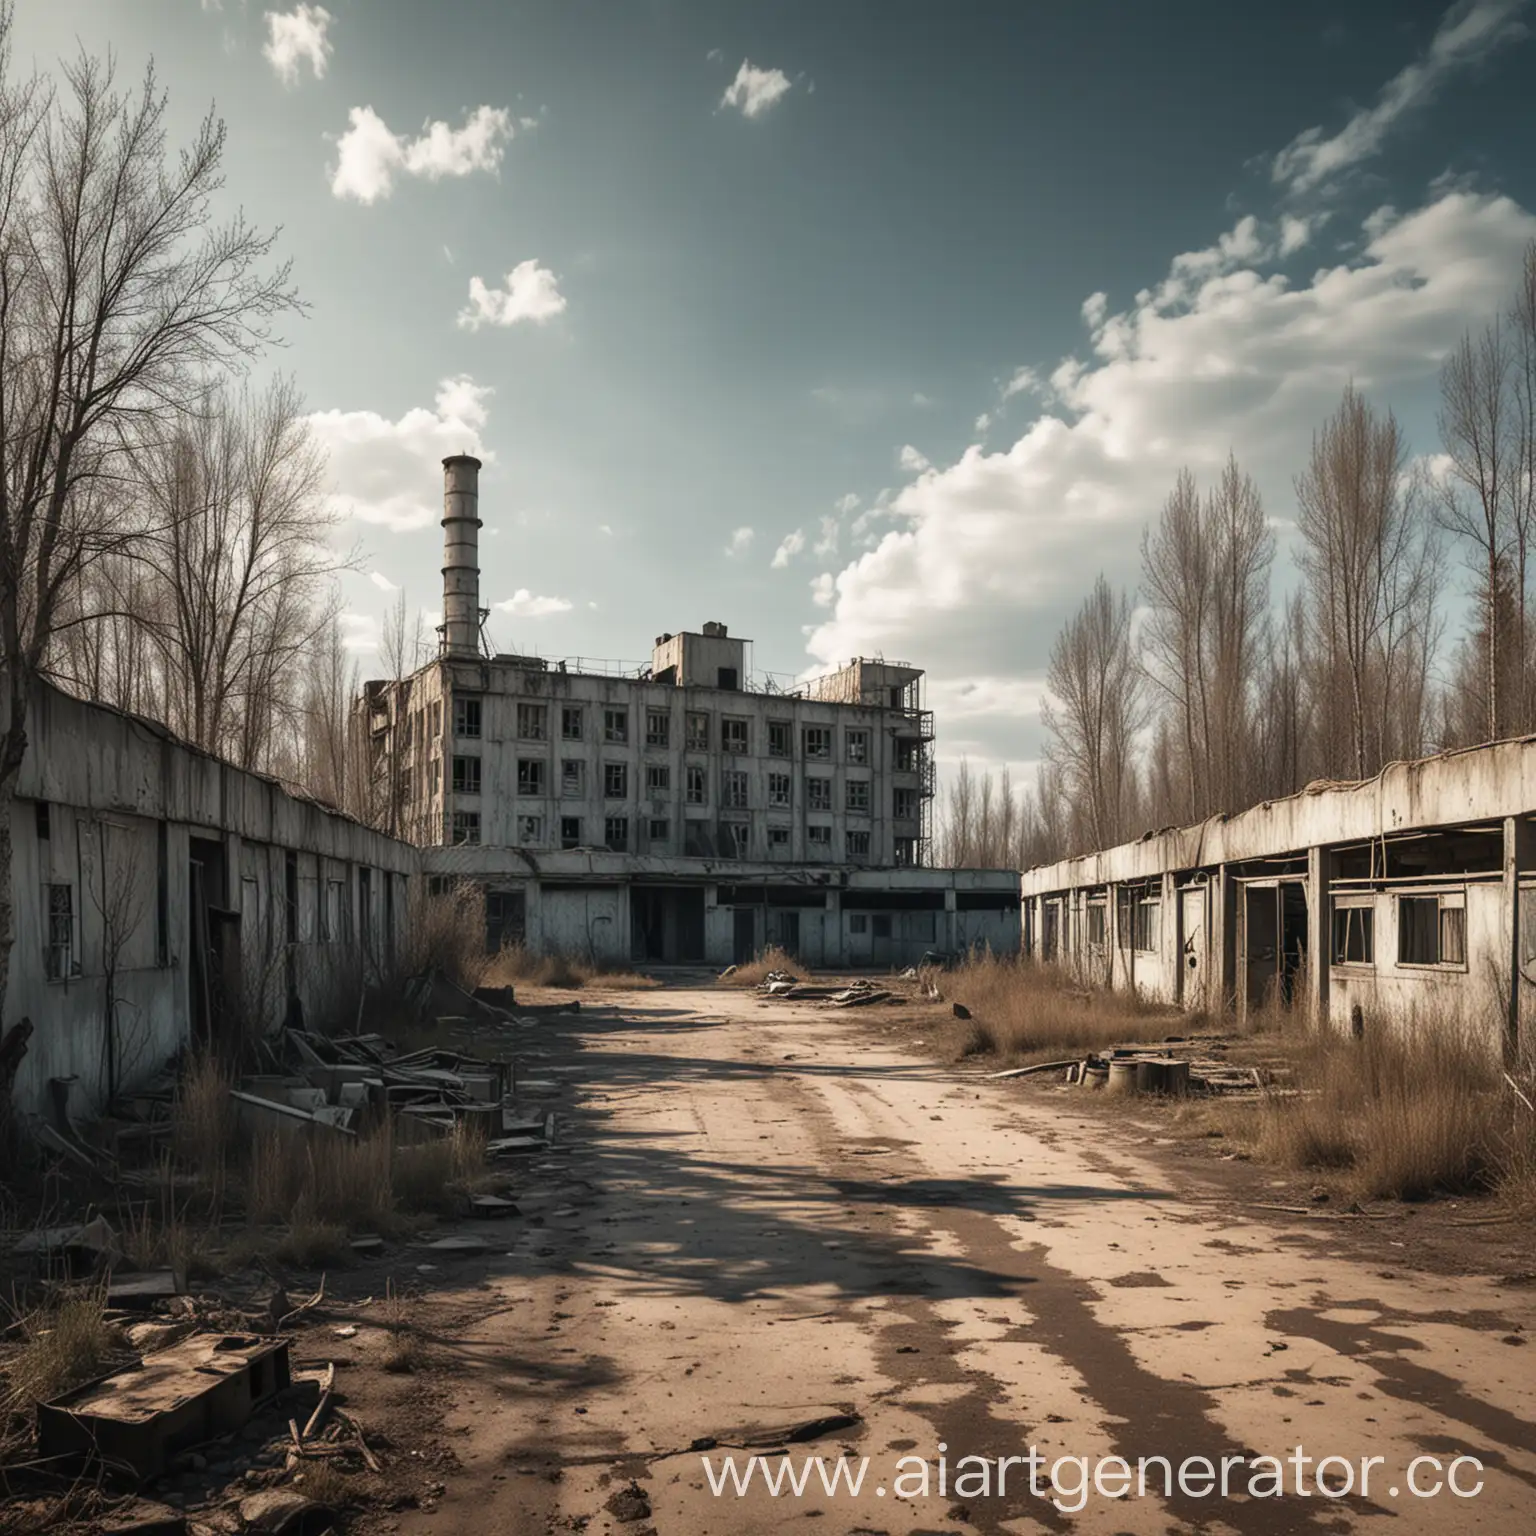 Нарисуй фото базы ЧВК в зоне ЧЗО (Чернобыльской Зоны Отчуждения) как в серии игр STALKER, где-то в заброшенном городе
